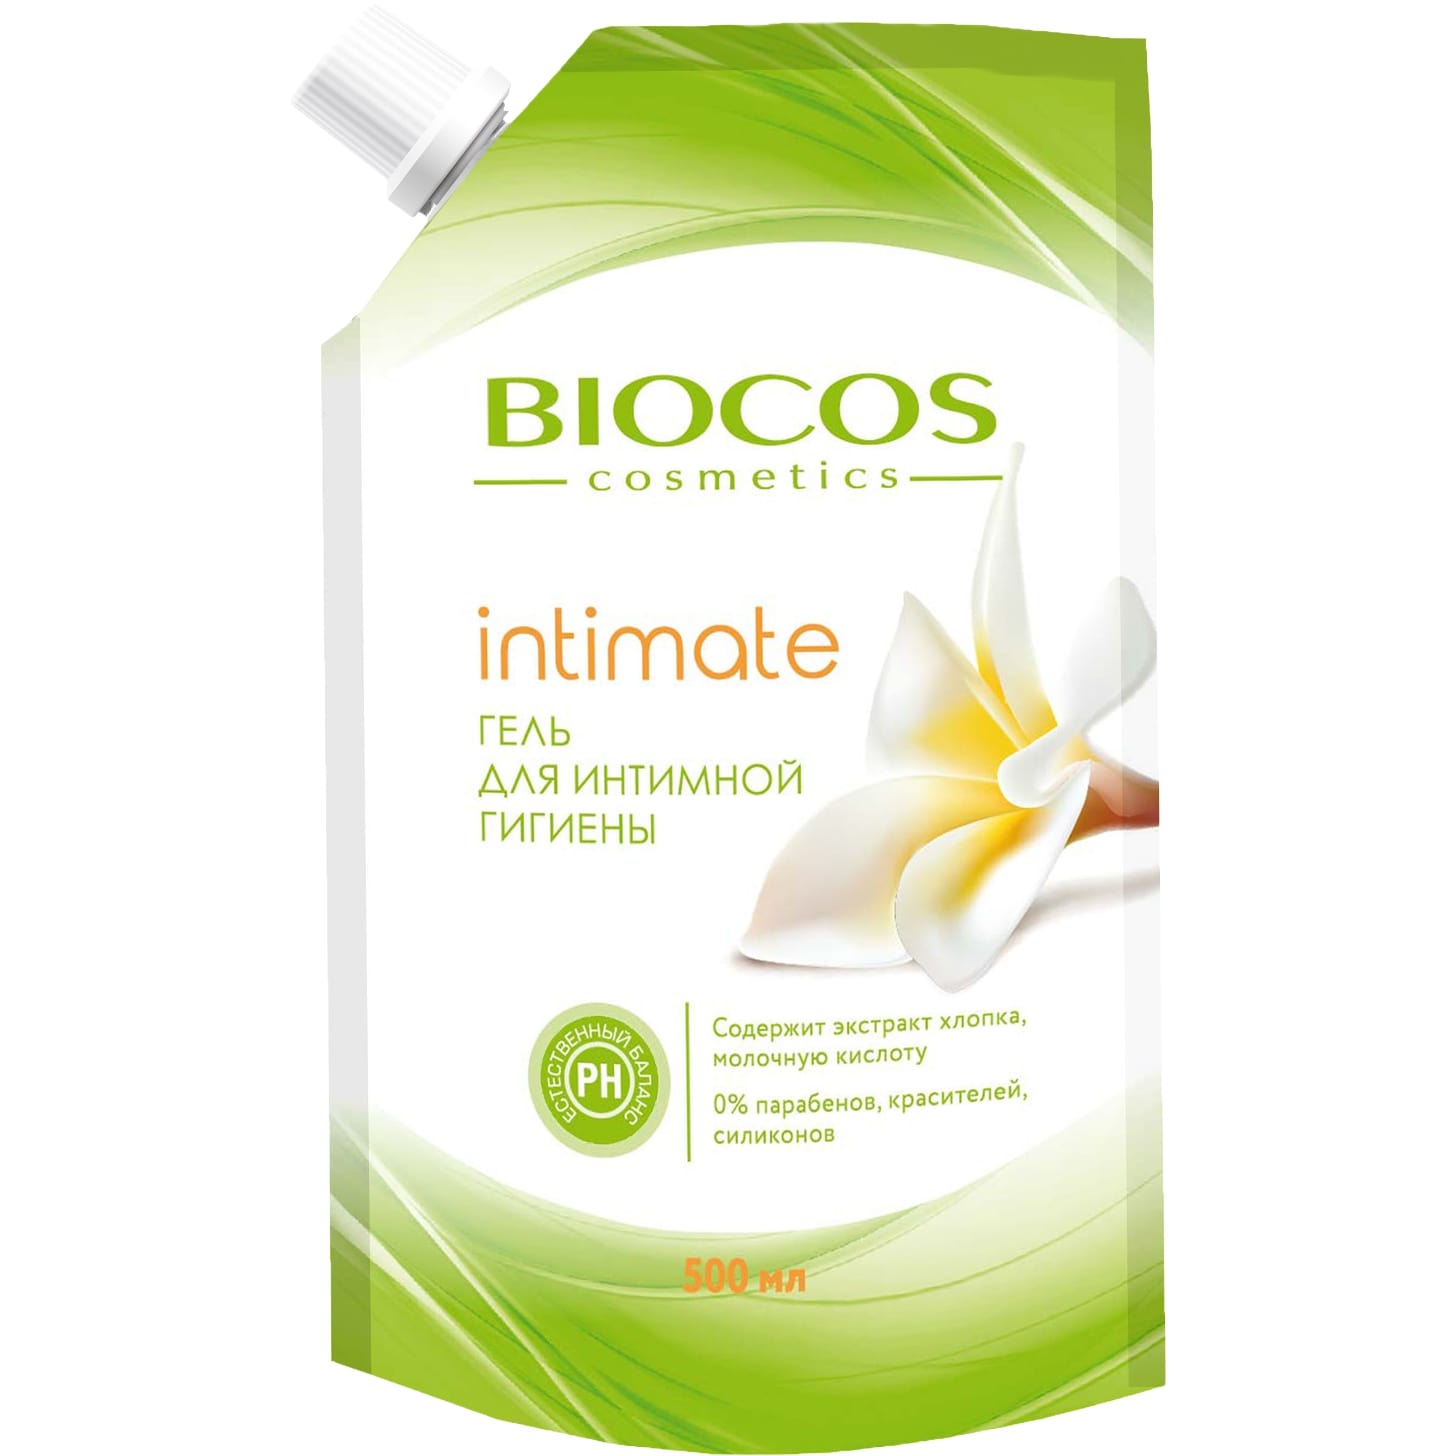 Гель для интимной гигиены BioCos intimate с экстрактом хлопка и молочной кислотой 500 мл гель скатка bioaqua успокаивающий с экстрактом лаванды 120 мл